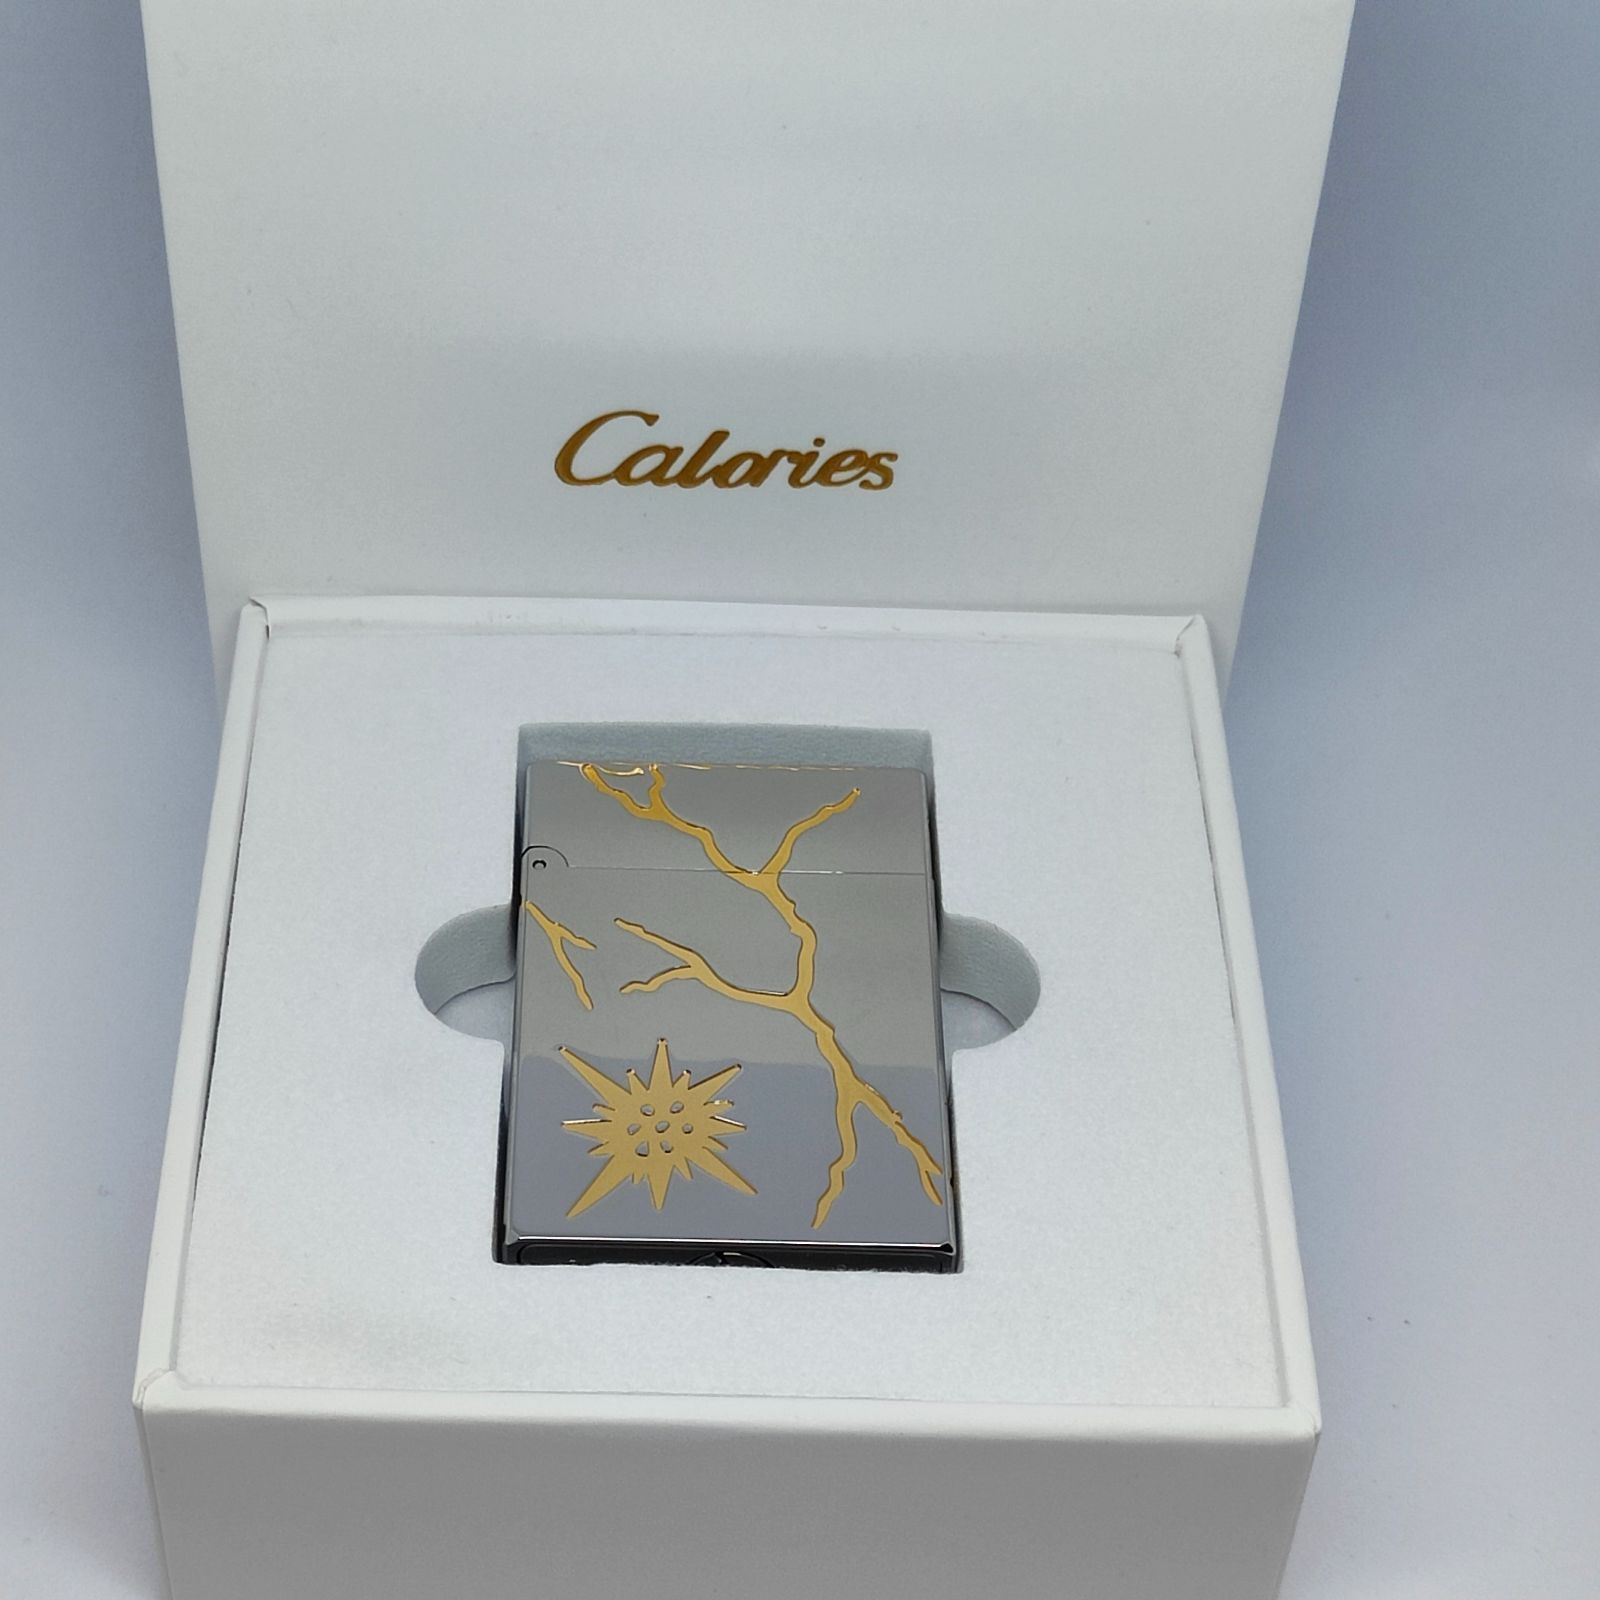 Caloriesオイルライター「稲光のスタイル」H02 快音ライター デュポン 